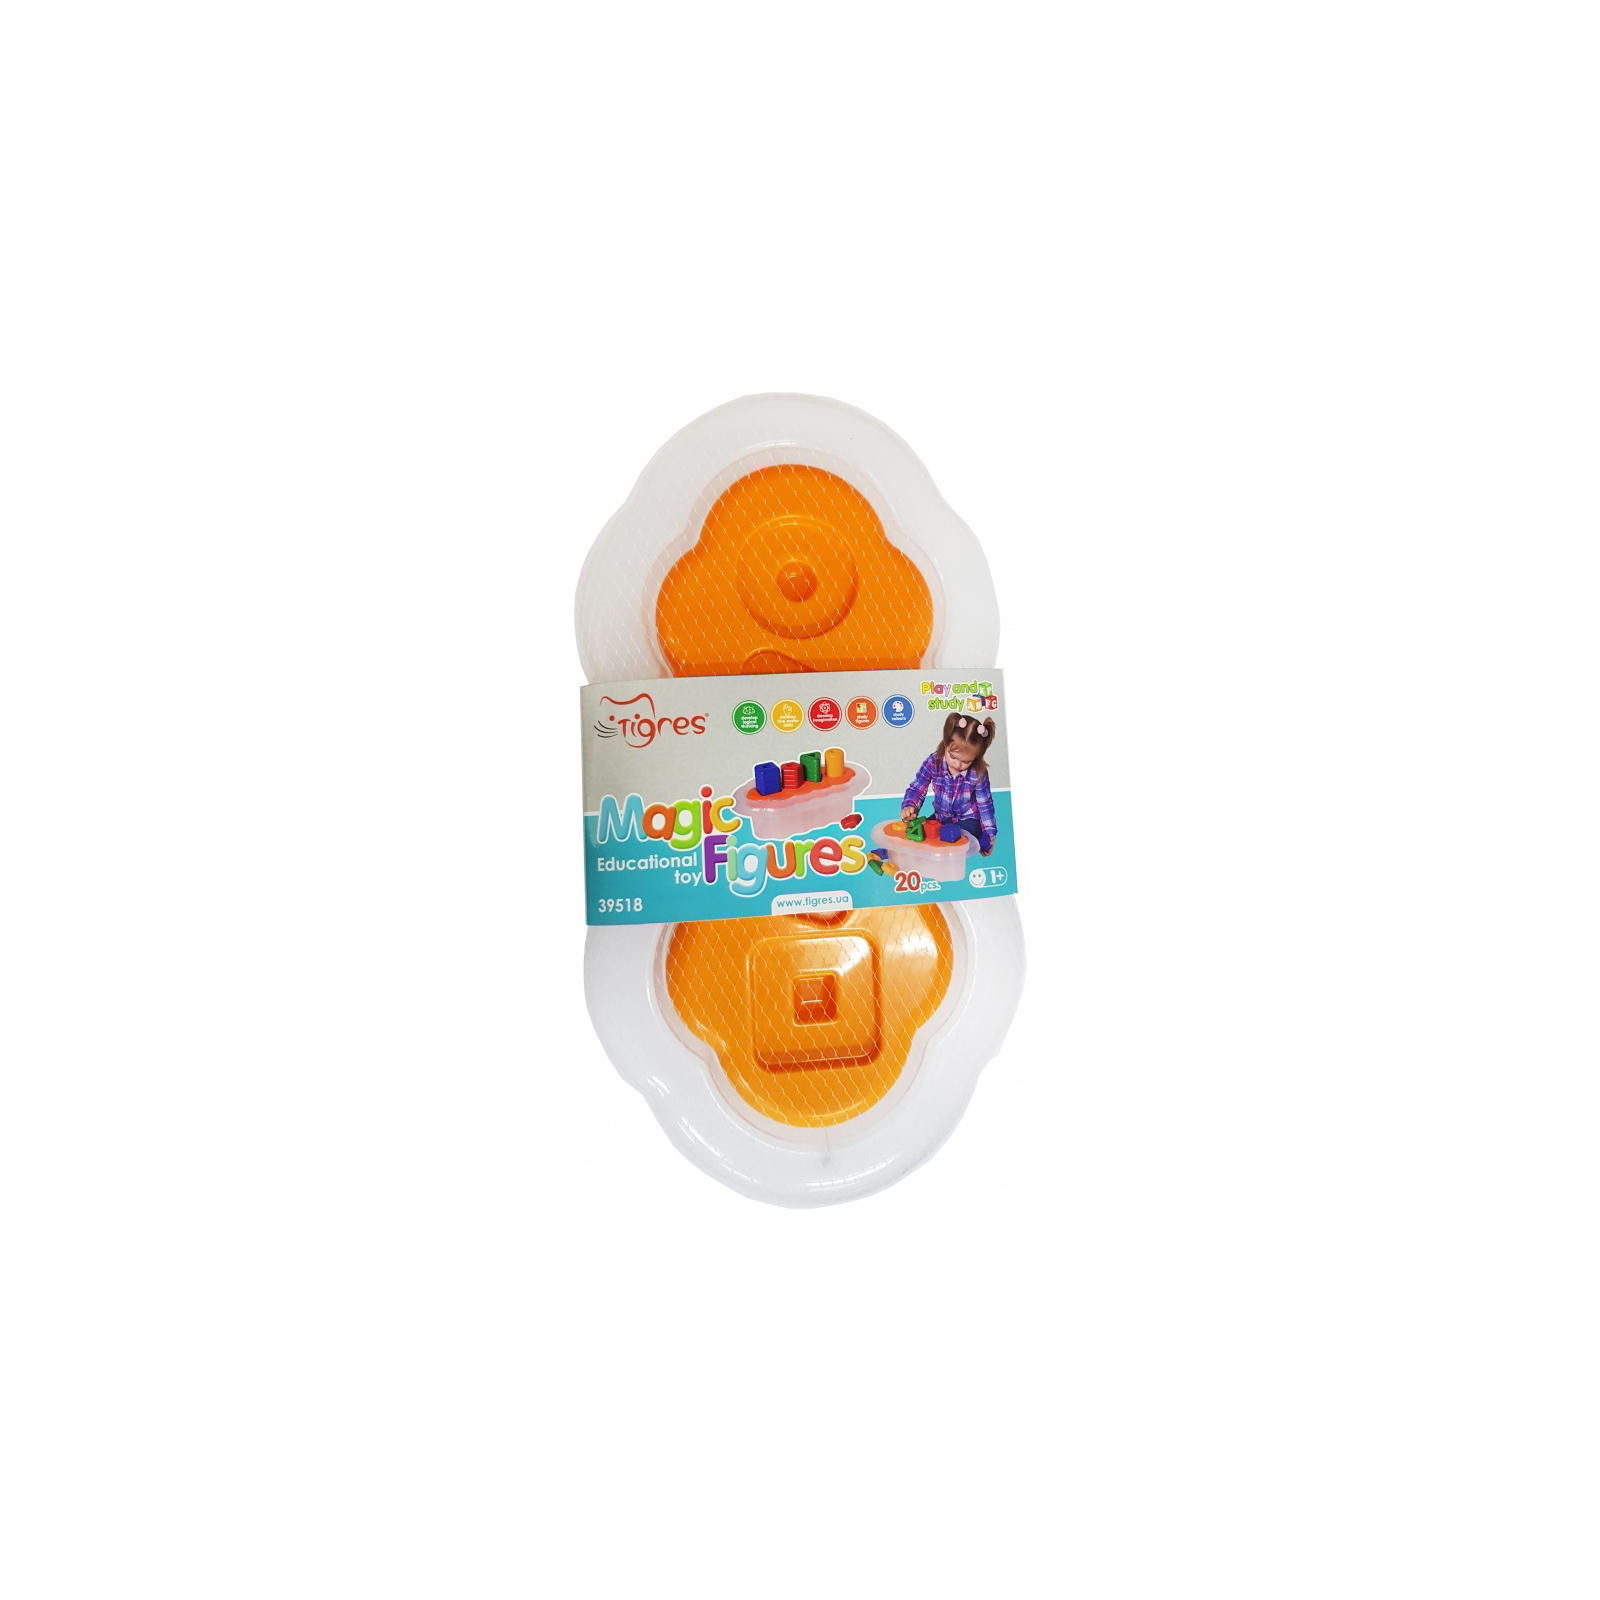 Развивающая игрушка Tigres Магические фигурки 20 элементов (оранжевый) (39518) изображение 2